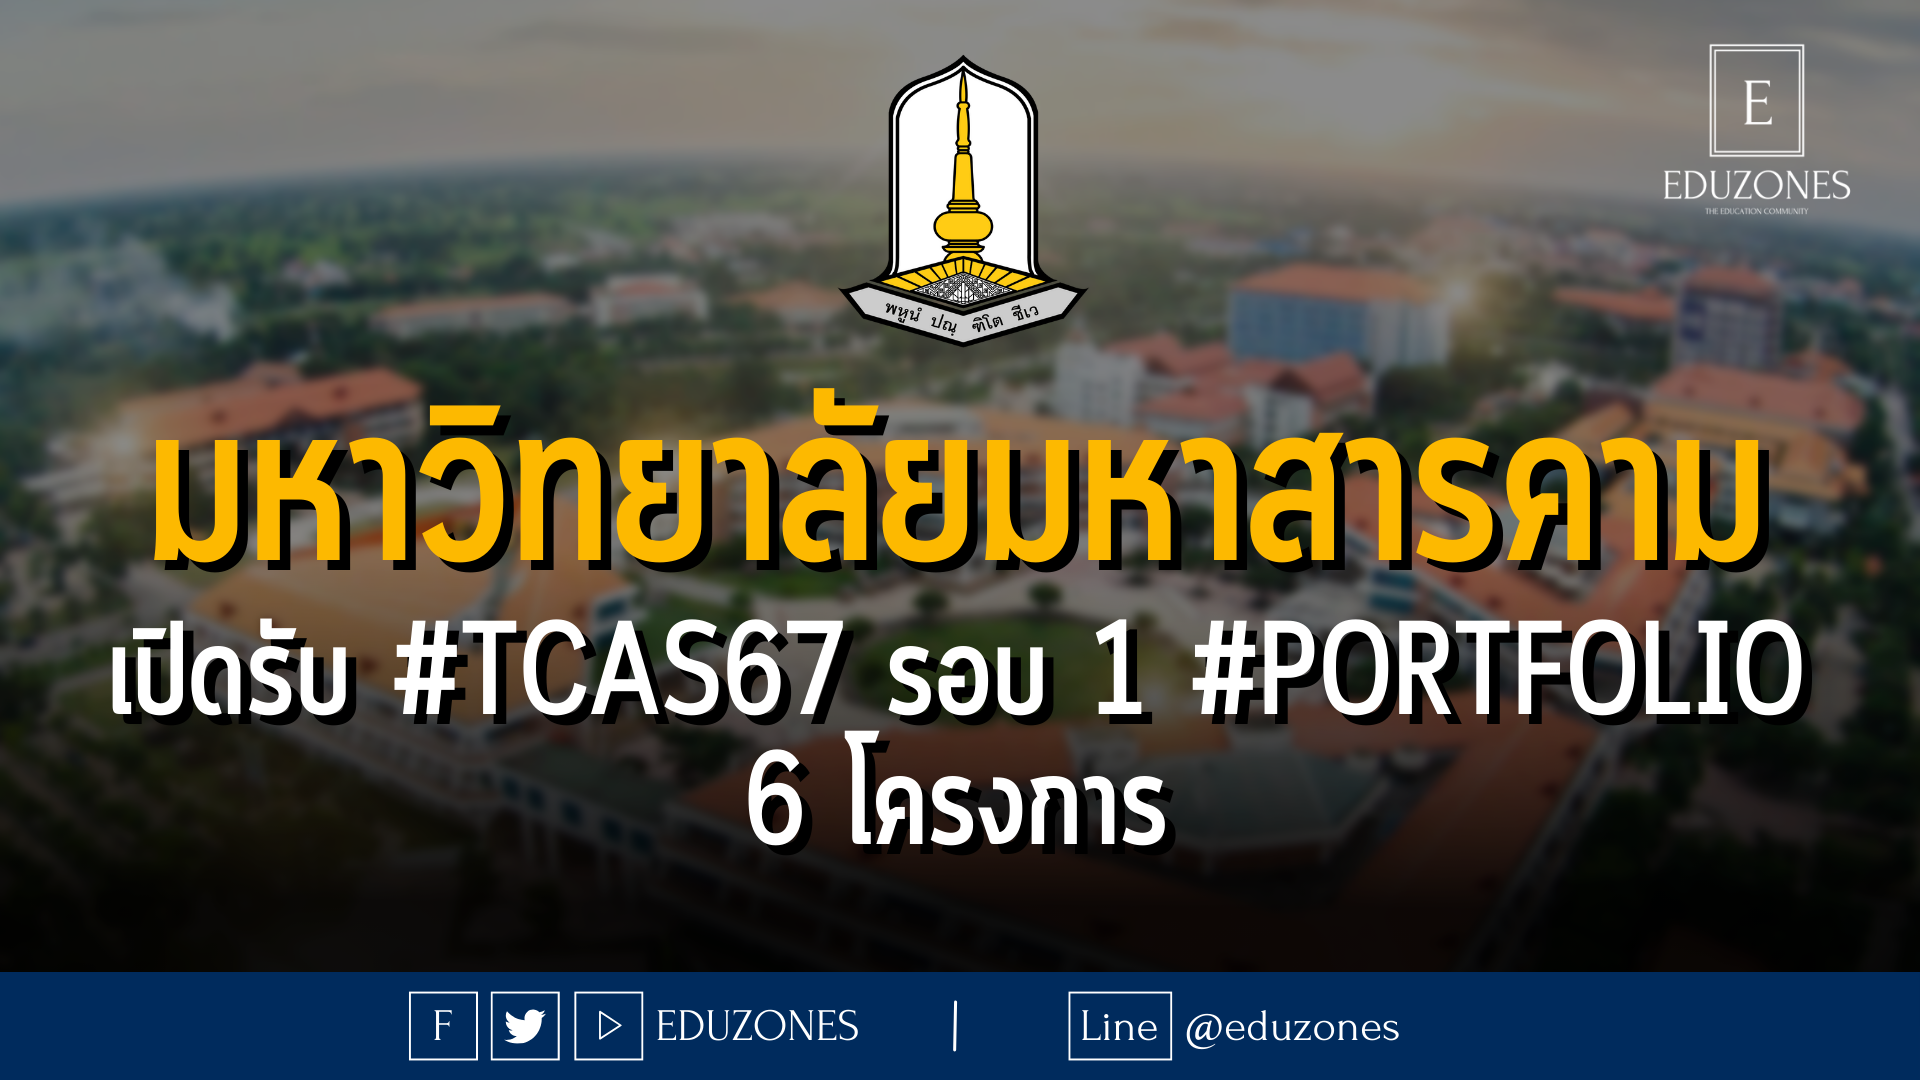 มหาวิทยาลัยมหาสารคาม เปิดรับ #TCAS67 รอบ 1 #PORTFOLIO 6 โครงการ